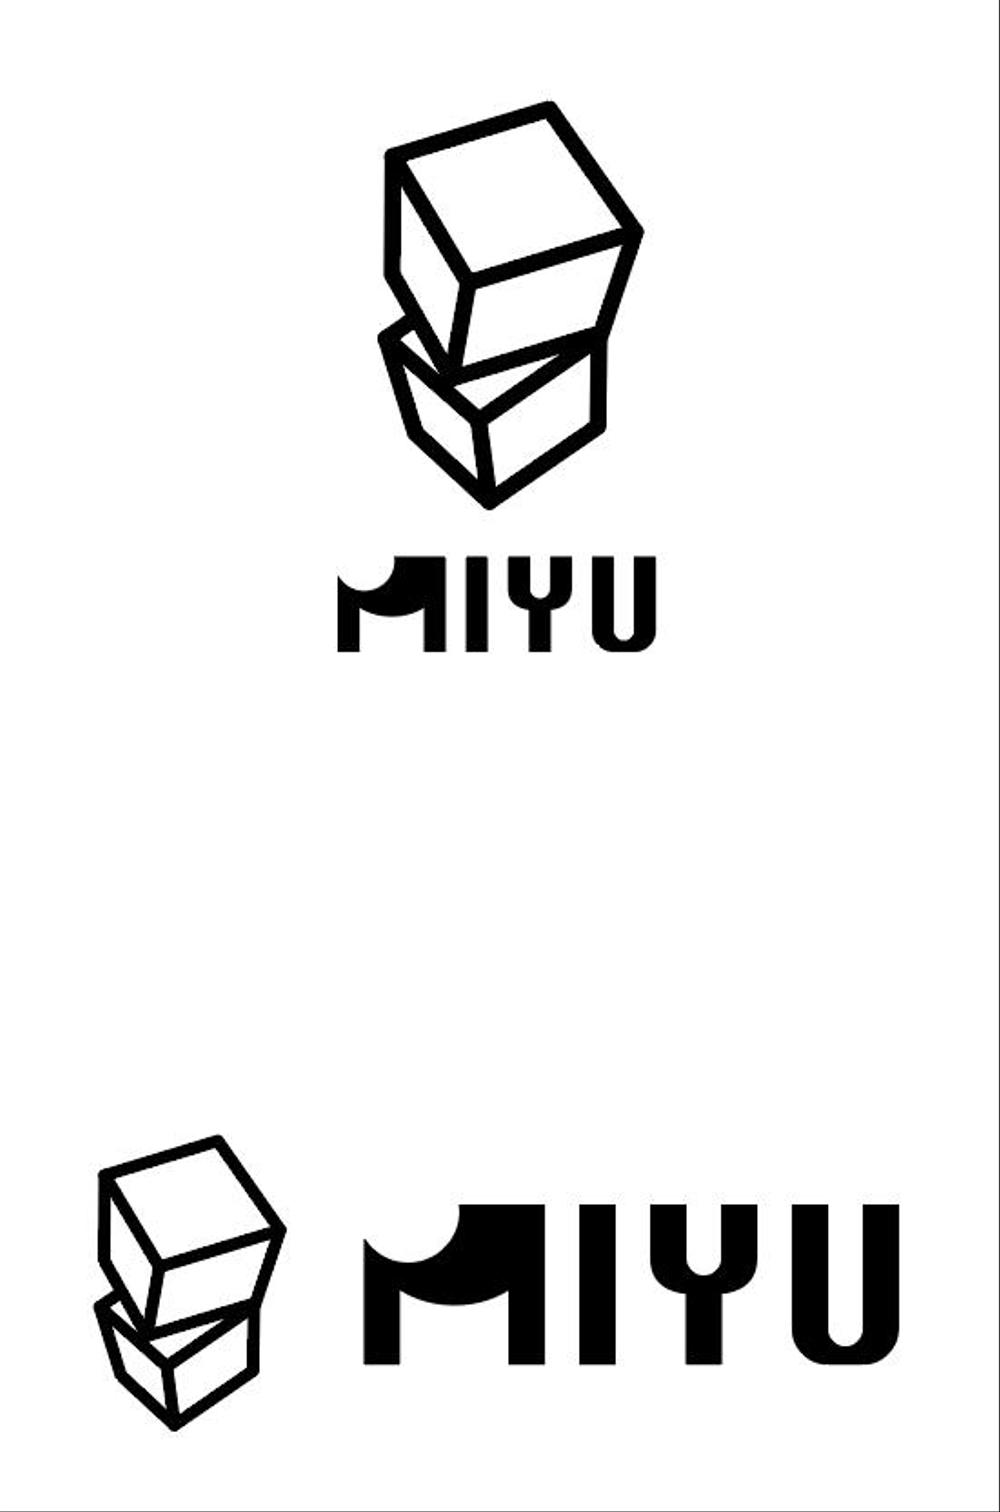 キューブウレタンを使用したインテリア「MIYU」シリーズのブランドロゴ